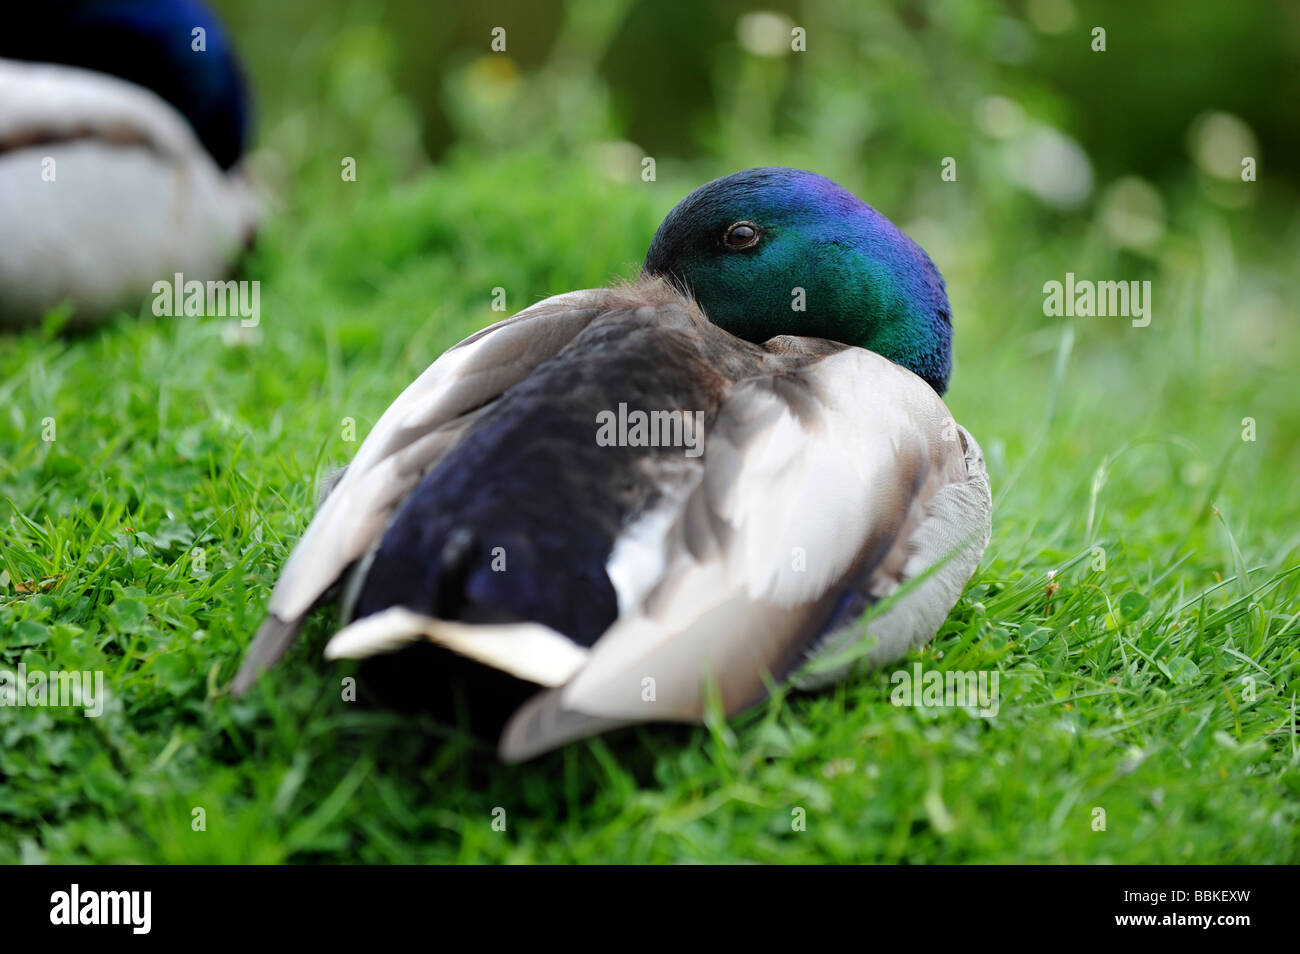 A duck sleeps with one eye open Stock Photo